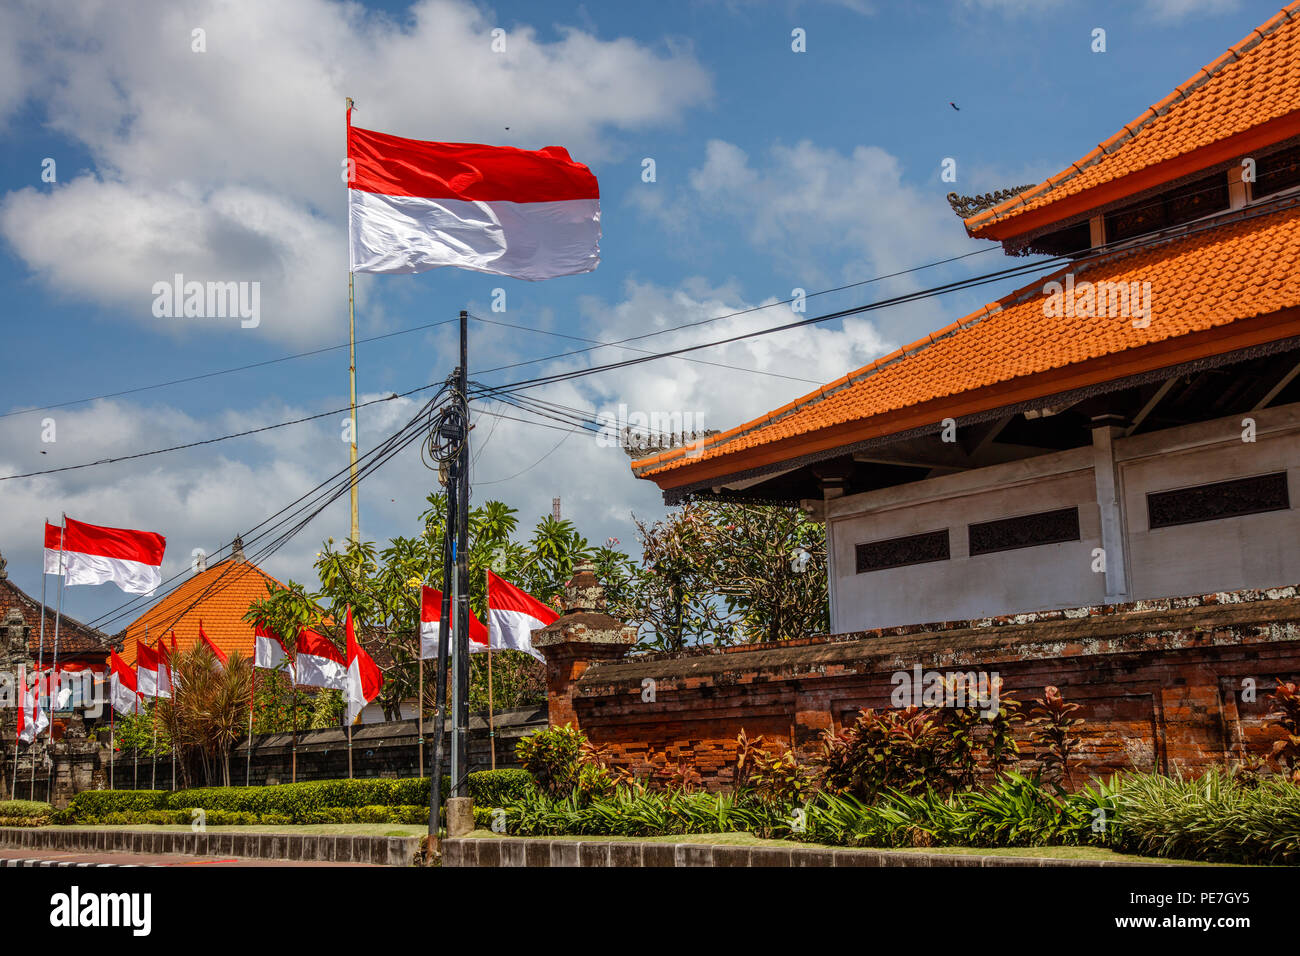 Les drapeaux sur les rues de Bali avant de célébration le jour de l'indépendance indonésienne. Bali, Indonésie Banque D'Images